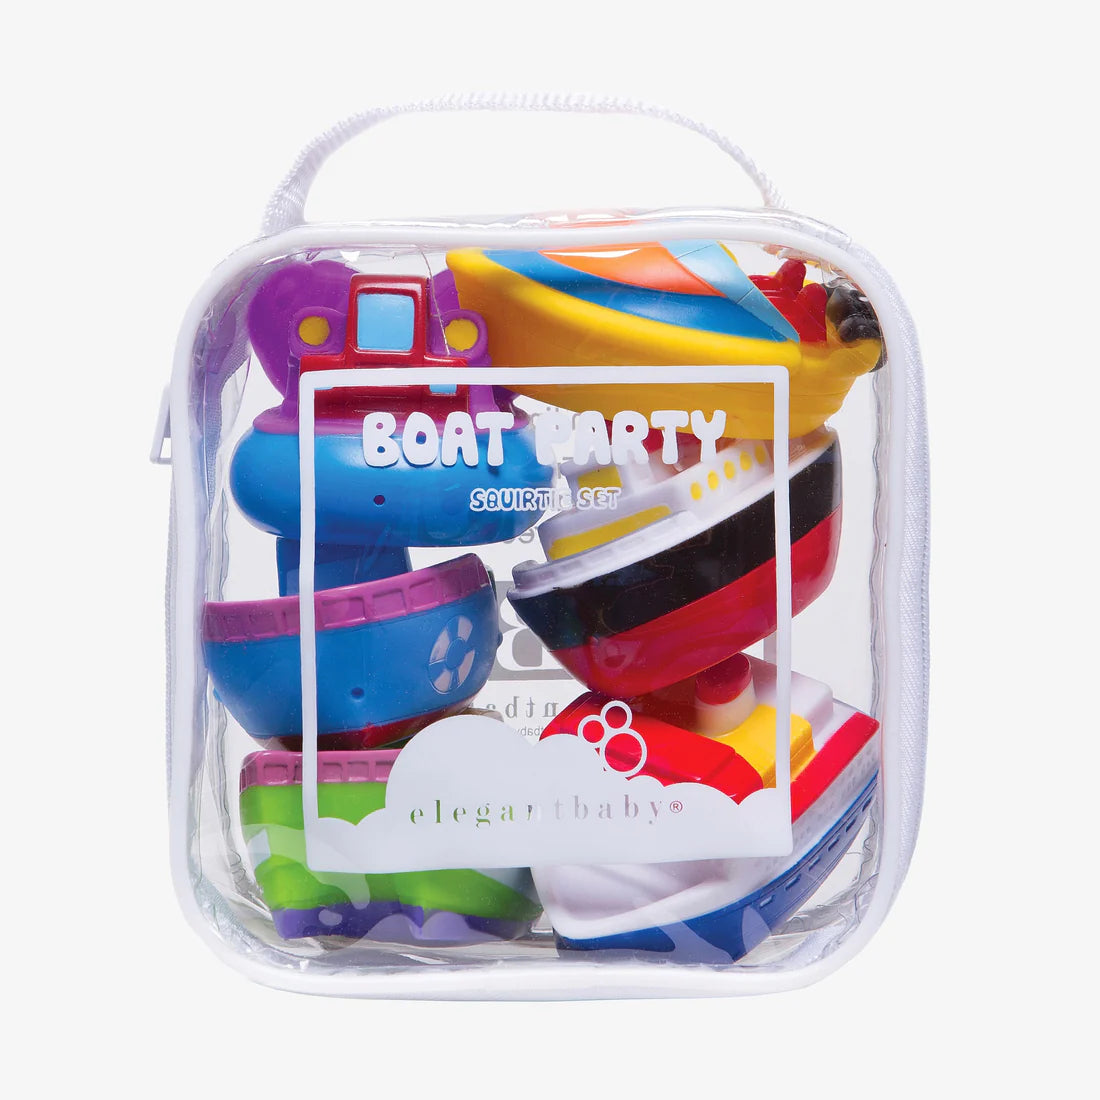 Boat Baby Bath Toy Set